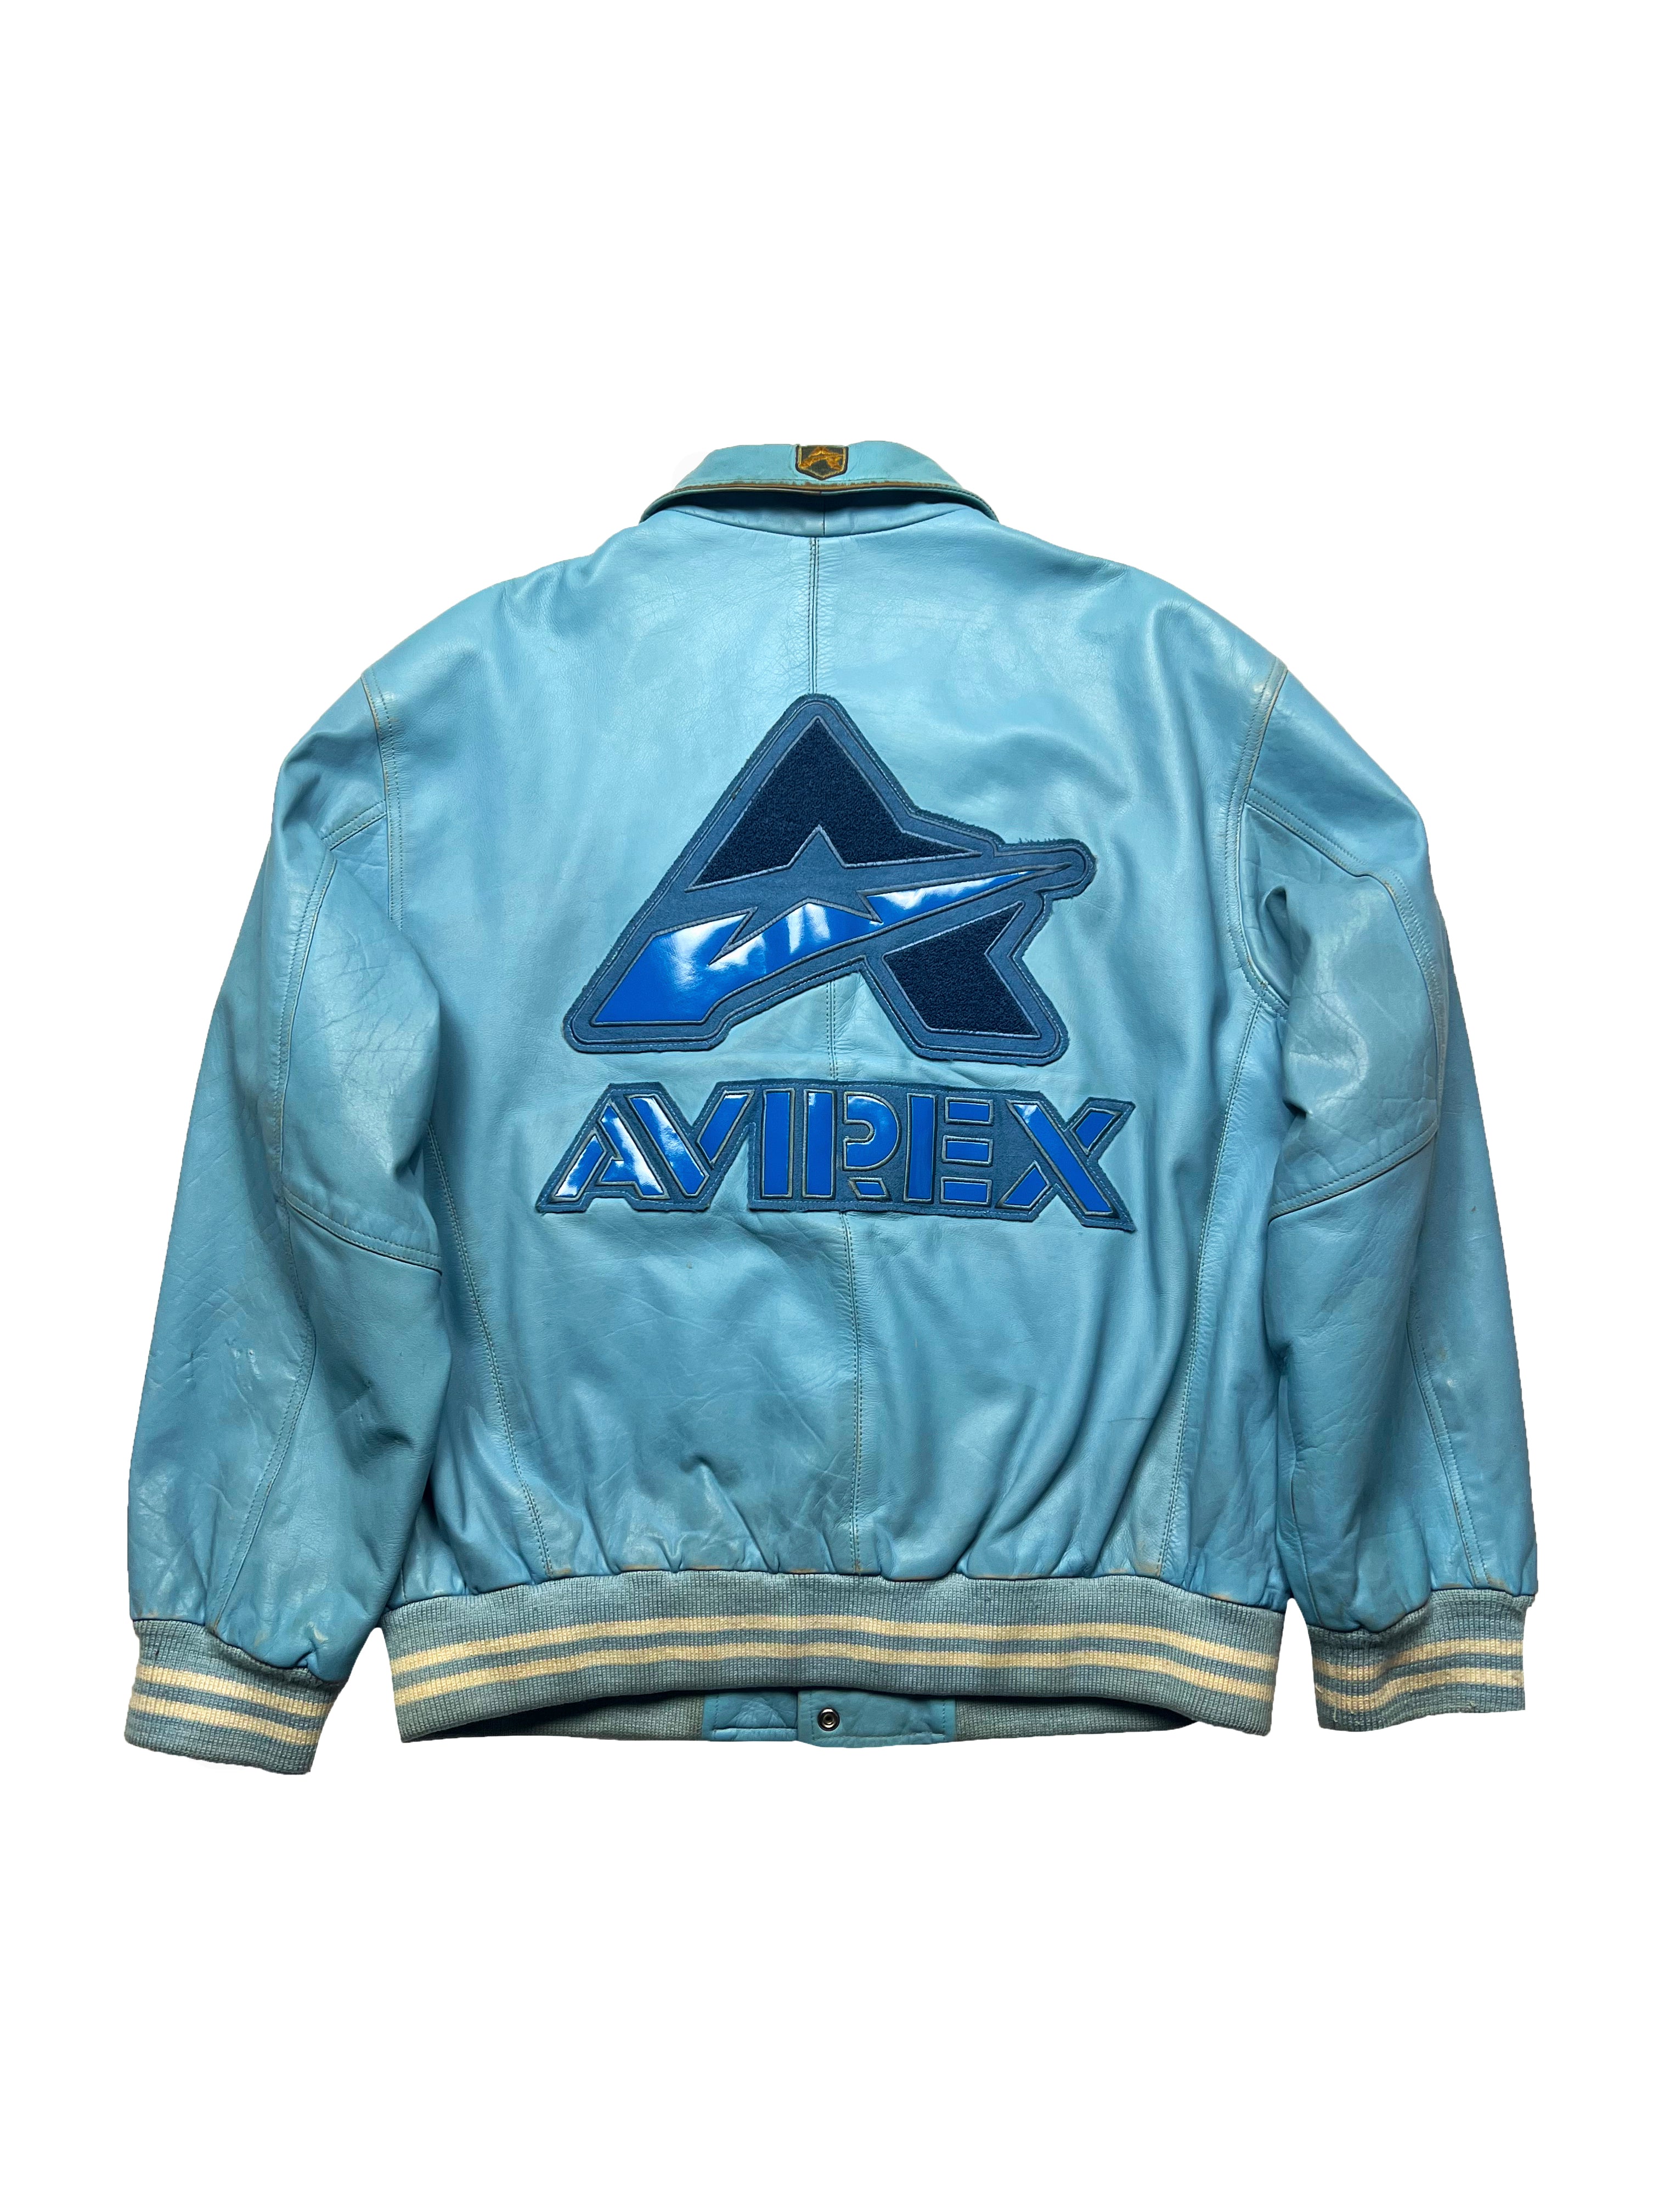 Avirex Baby Blue Leather Jacket 90's